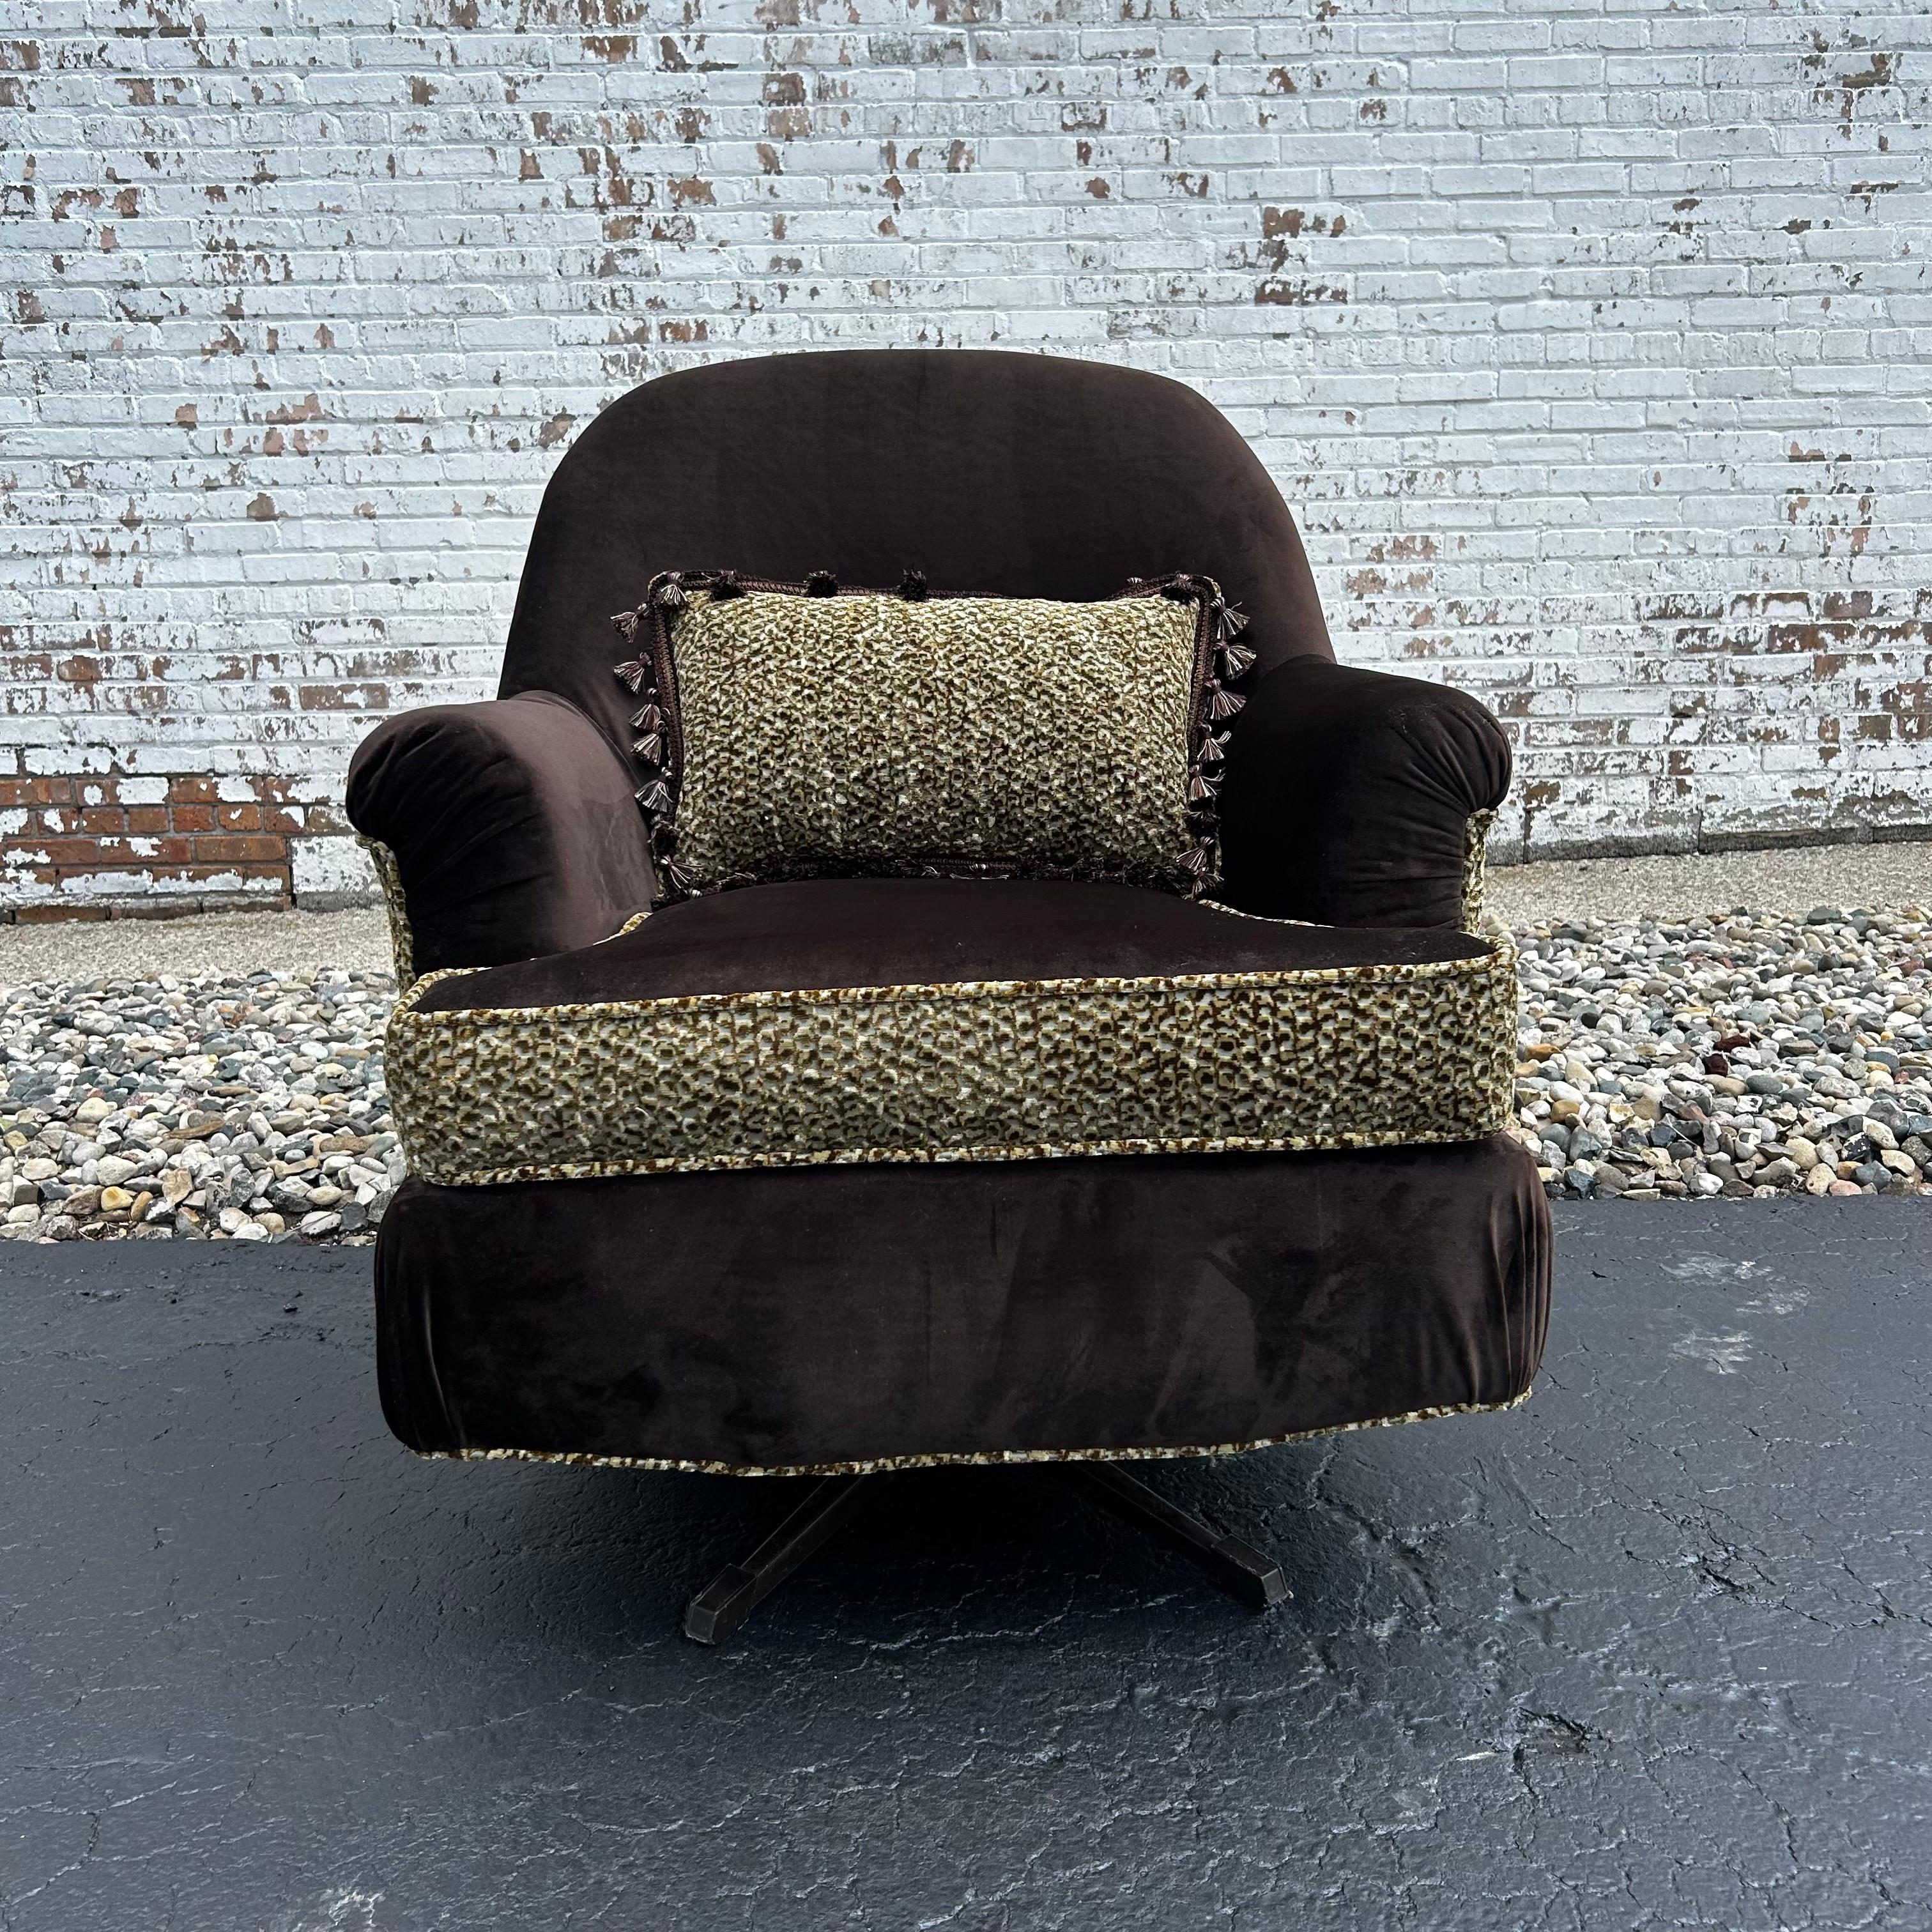 Élégante et luxuriante, cette chaise à bascule vintage cherche un nouvel endroit où s'installer. Nous adorons son esthétique moderne Safari Glam ! Le velours ultra doux en brun foncé s'associe à une chenille confortable à imprimé léopard dans des